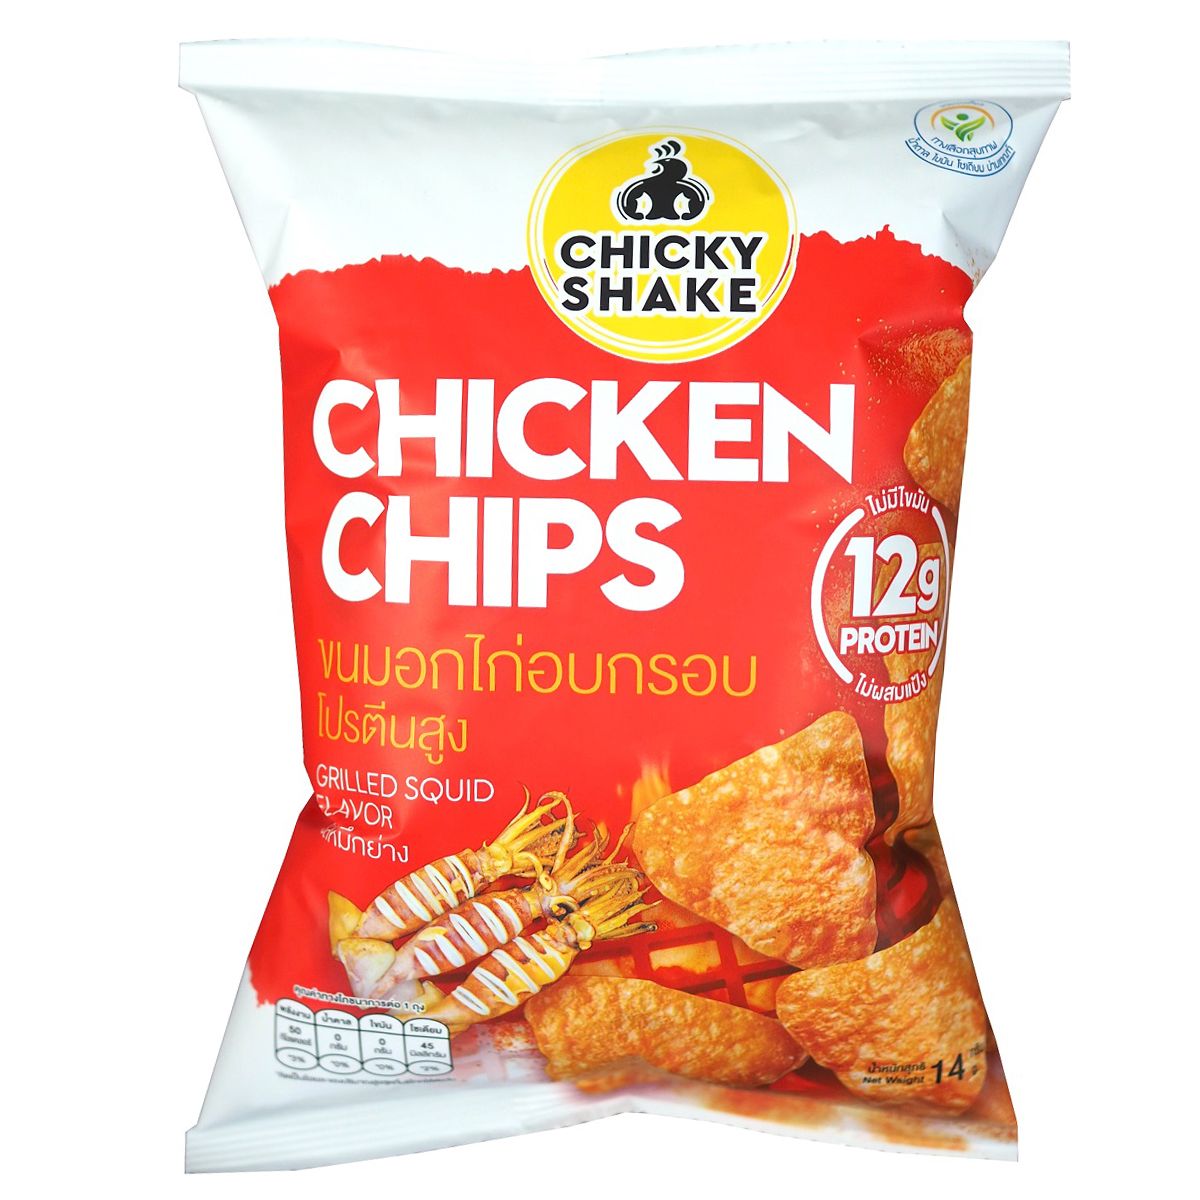 ?(แพ็ค3)?ชิคกี้เชคชิกเก้นชิพส์รสปลาหมึกย่าง 12 กรัมโปรตีน 14 กรัม/Chicky Shake Chicken Chips Grilled Squid Flavour 12g Protein 14g